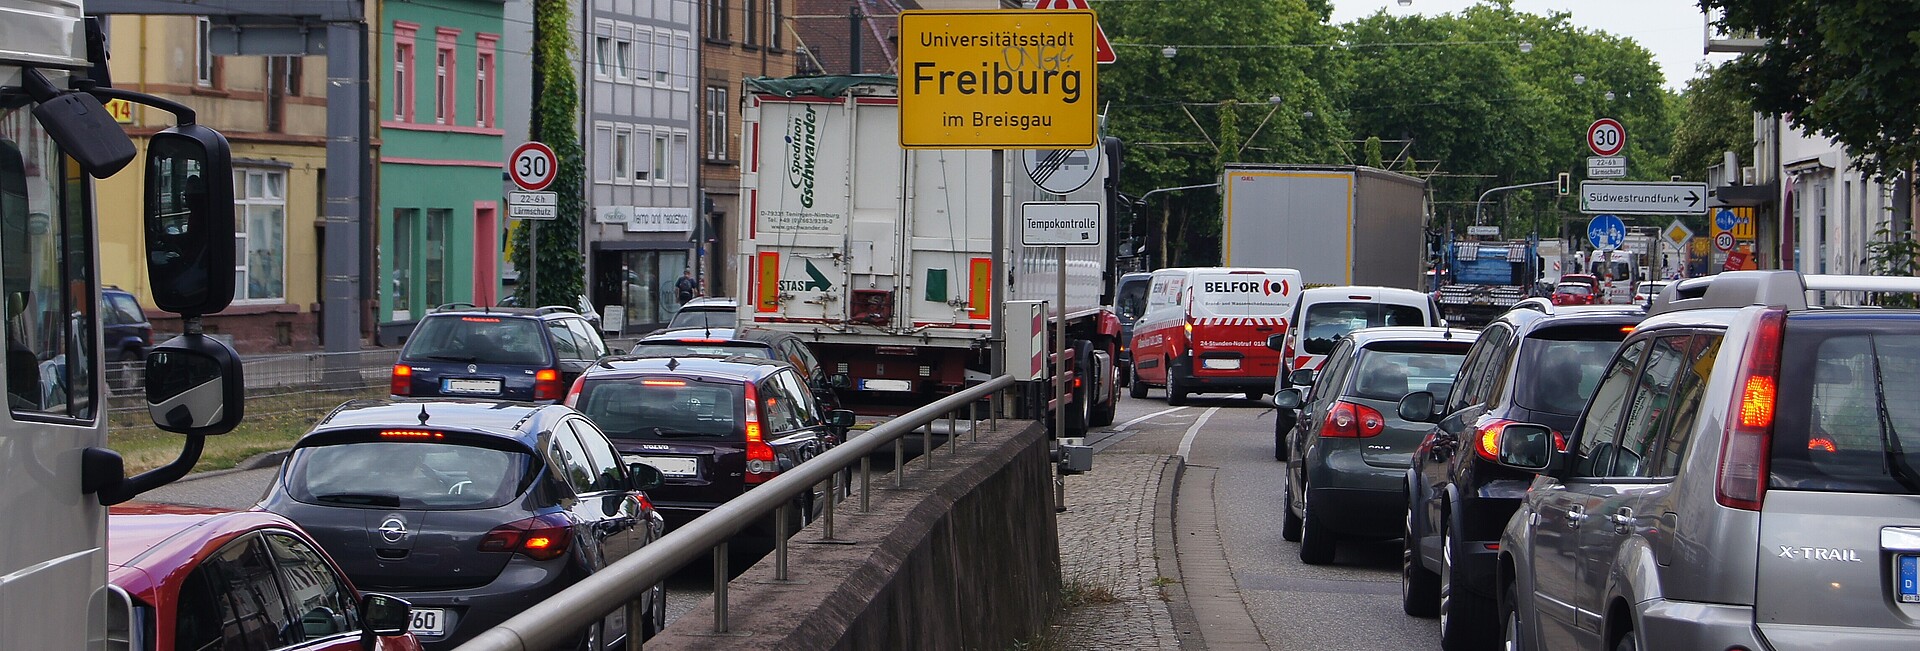 Schwarzwaldstraße in Freiburg